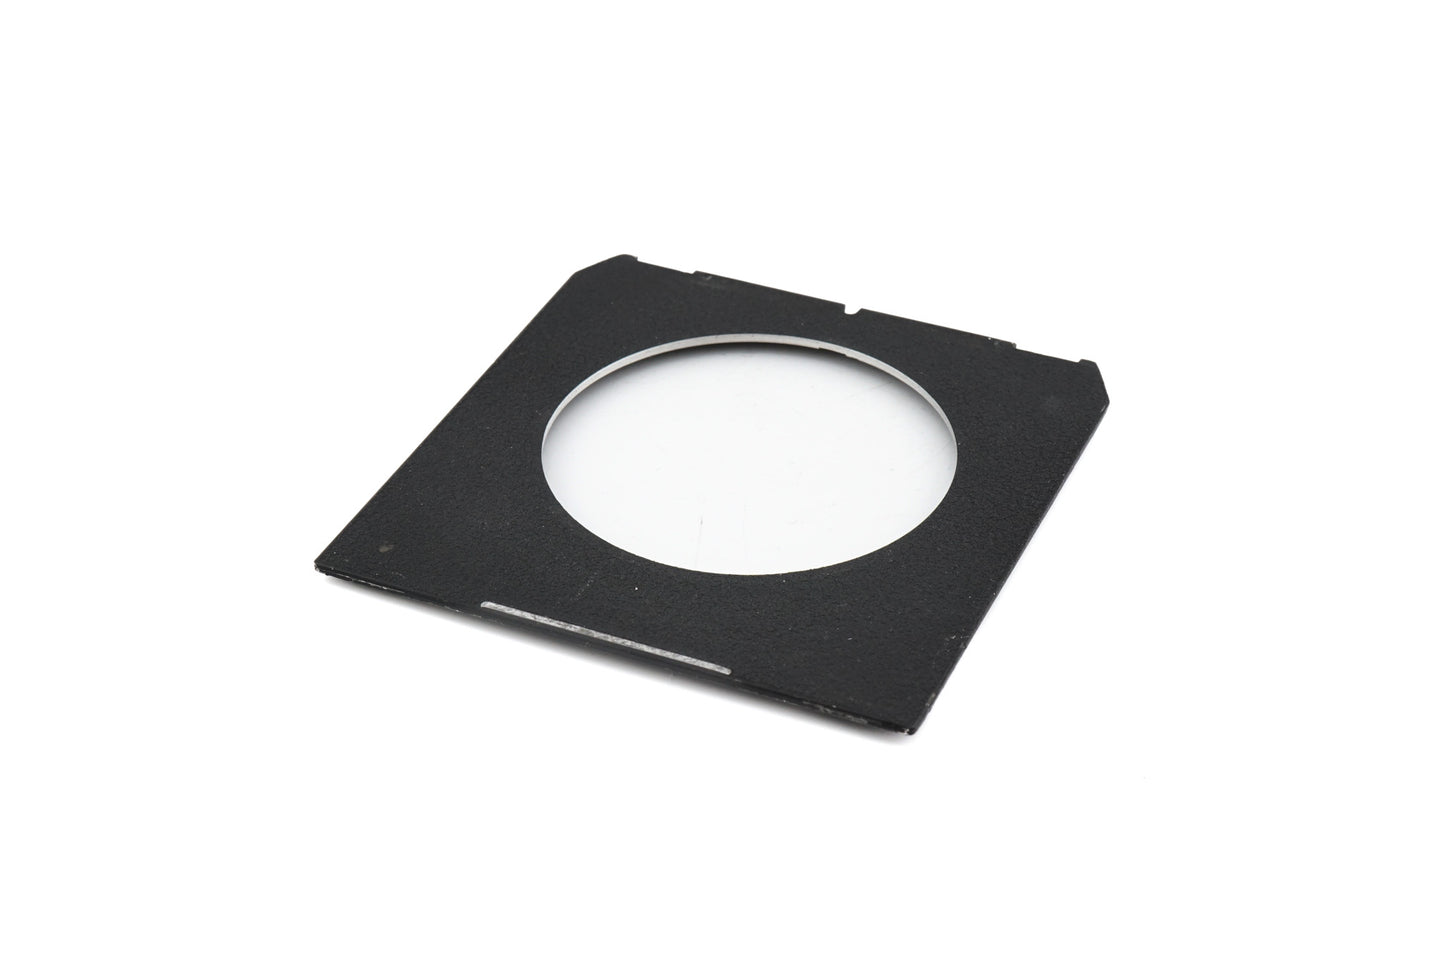 Toyo Lens Board for Linhof/Wista 99 x 96mm Copal #3